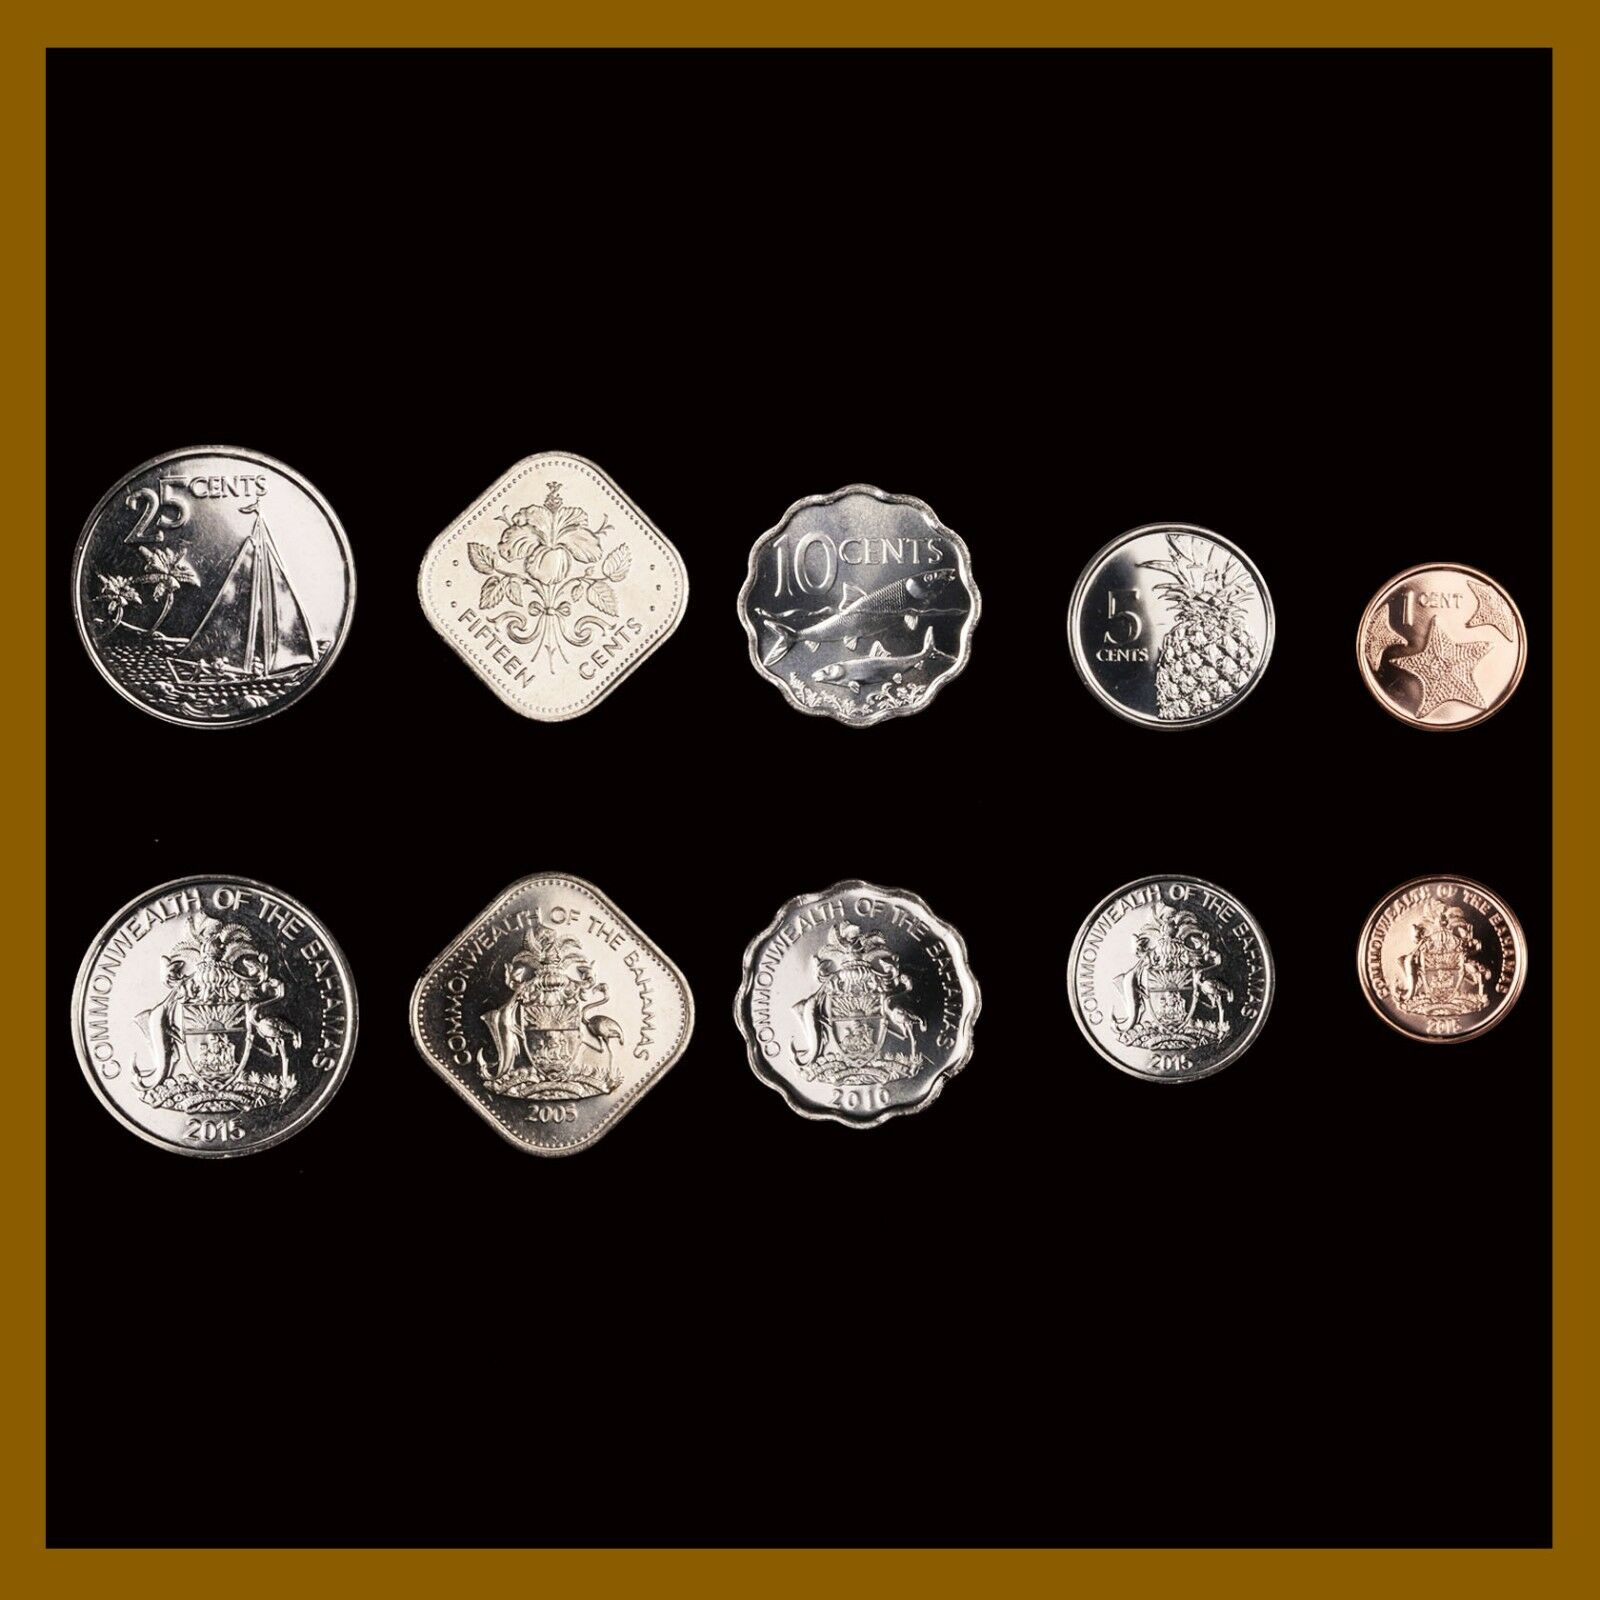 Bahamas 1 5 10 15 25 Cents (5 Pcs Coin Set), 2005/10/15 Sea Star Fish Sailboat